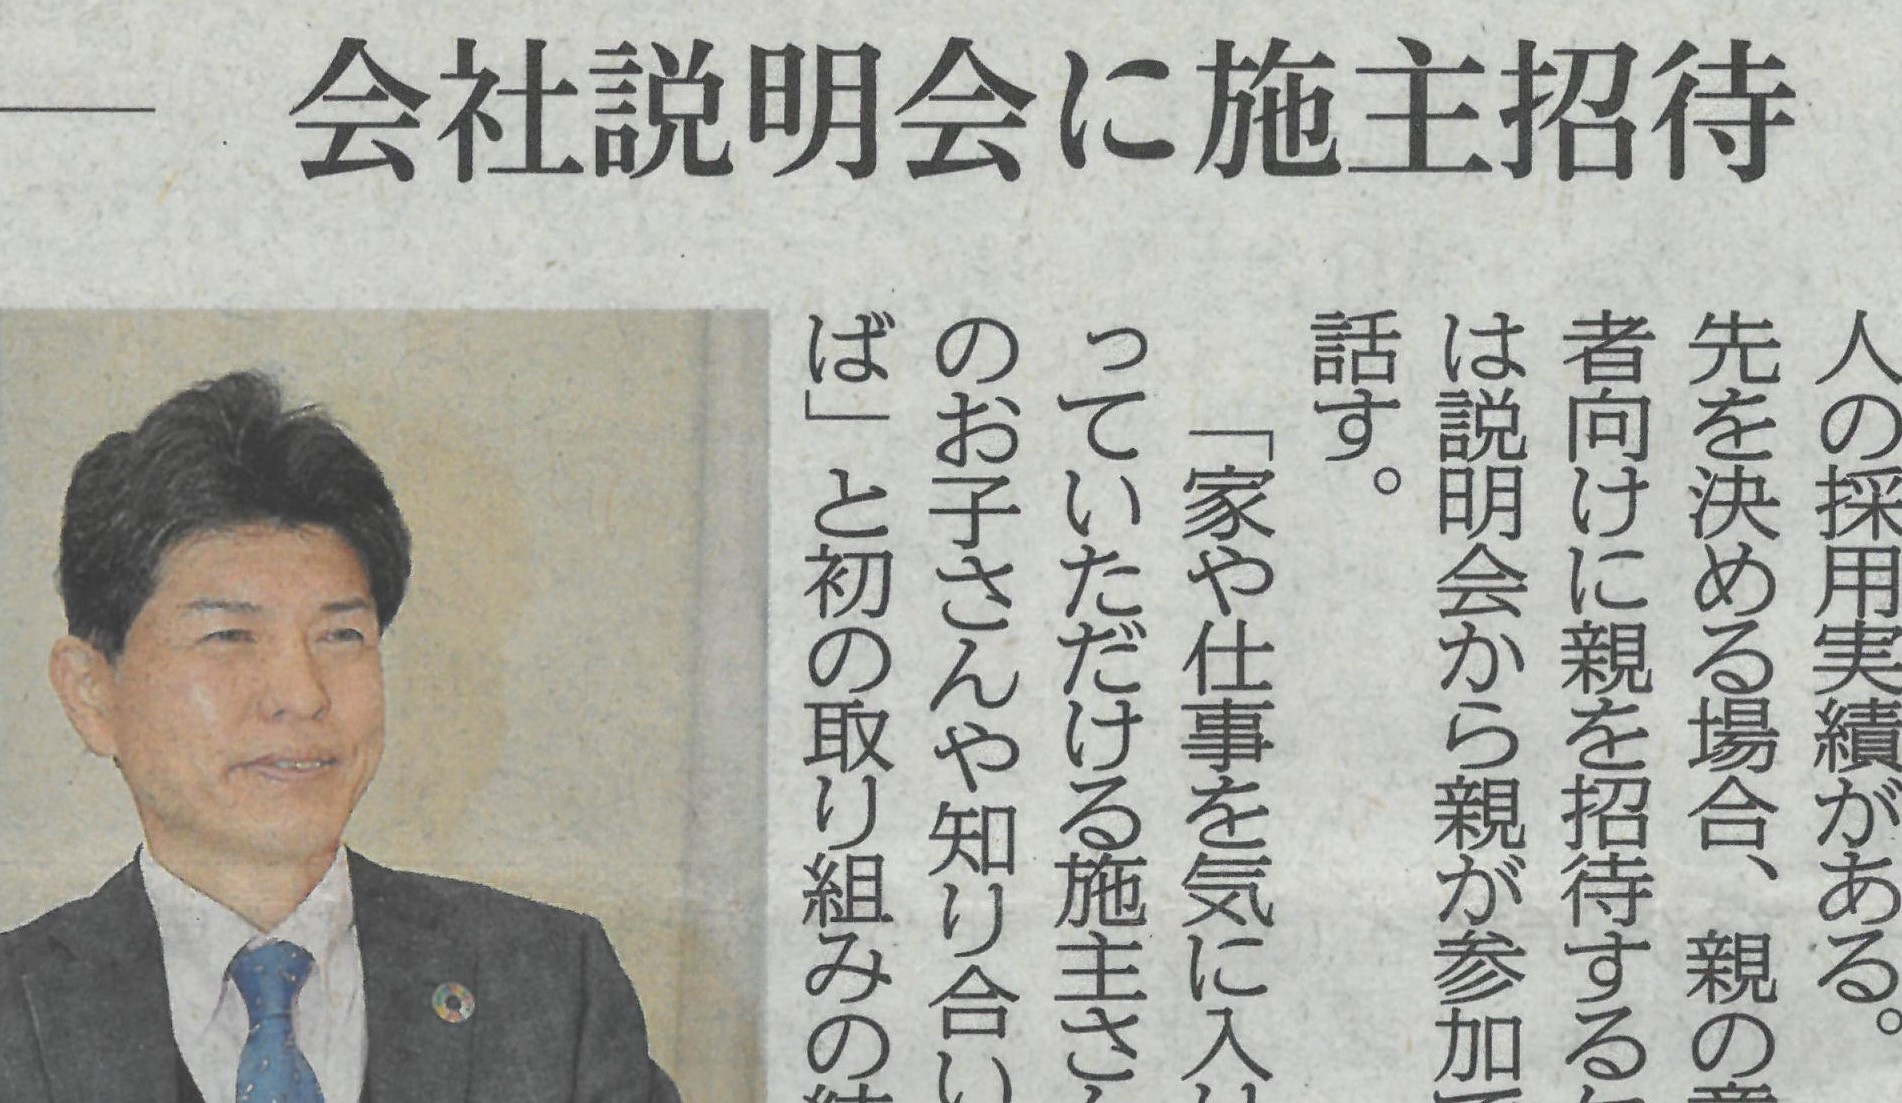 弊社の新卒採用について、新しい取り組みとして岐阜新聞に紹介をされました。